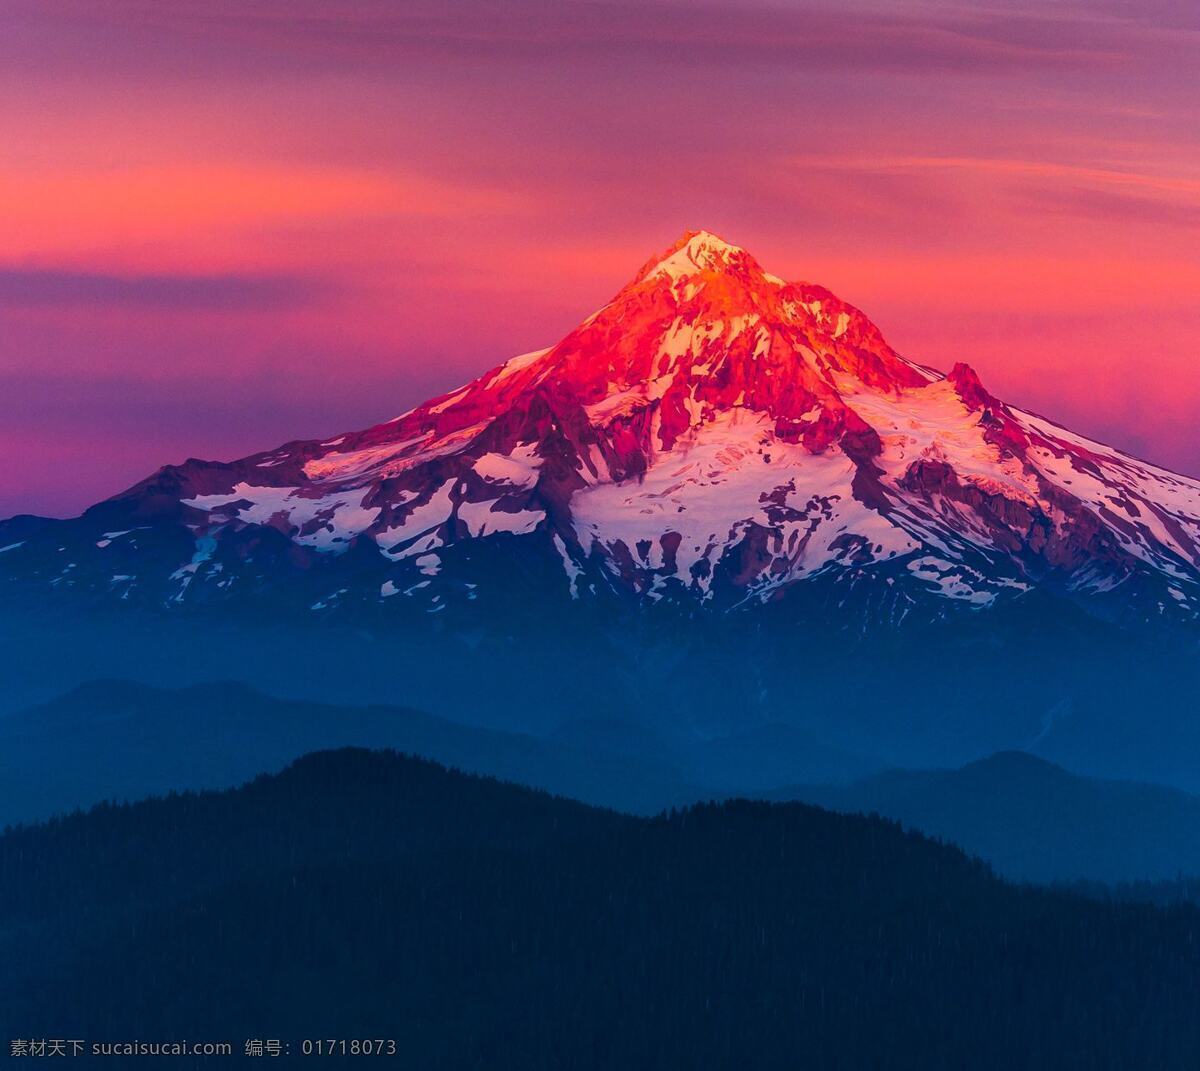 晚霞 下 雪山 顶 山顶 山脉 雪 红色 光 天空 火山 自然景观 自然风景